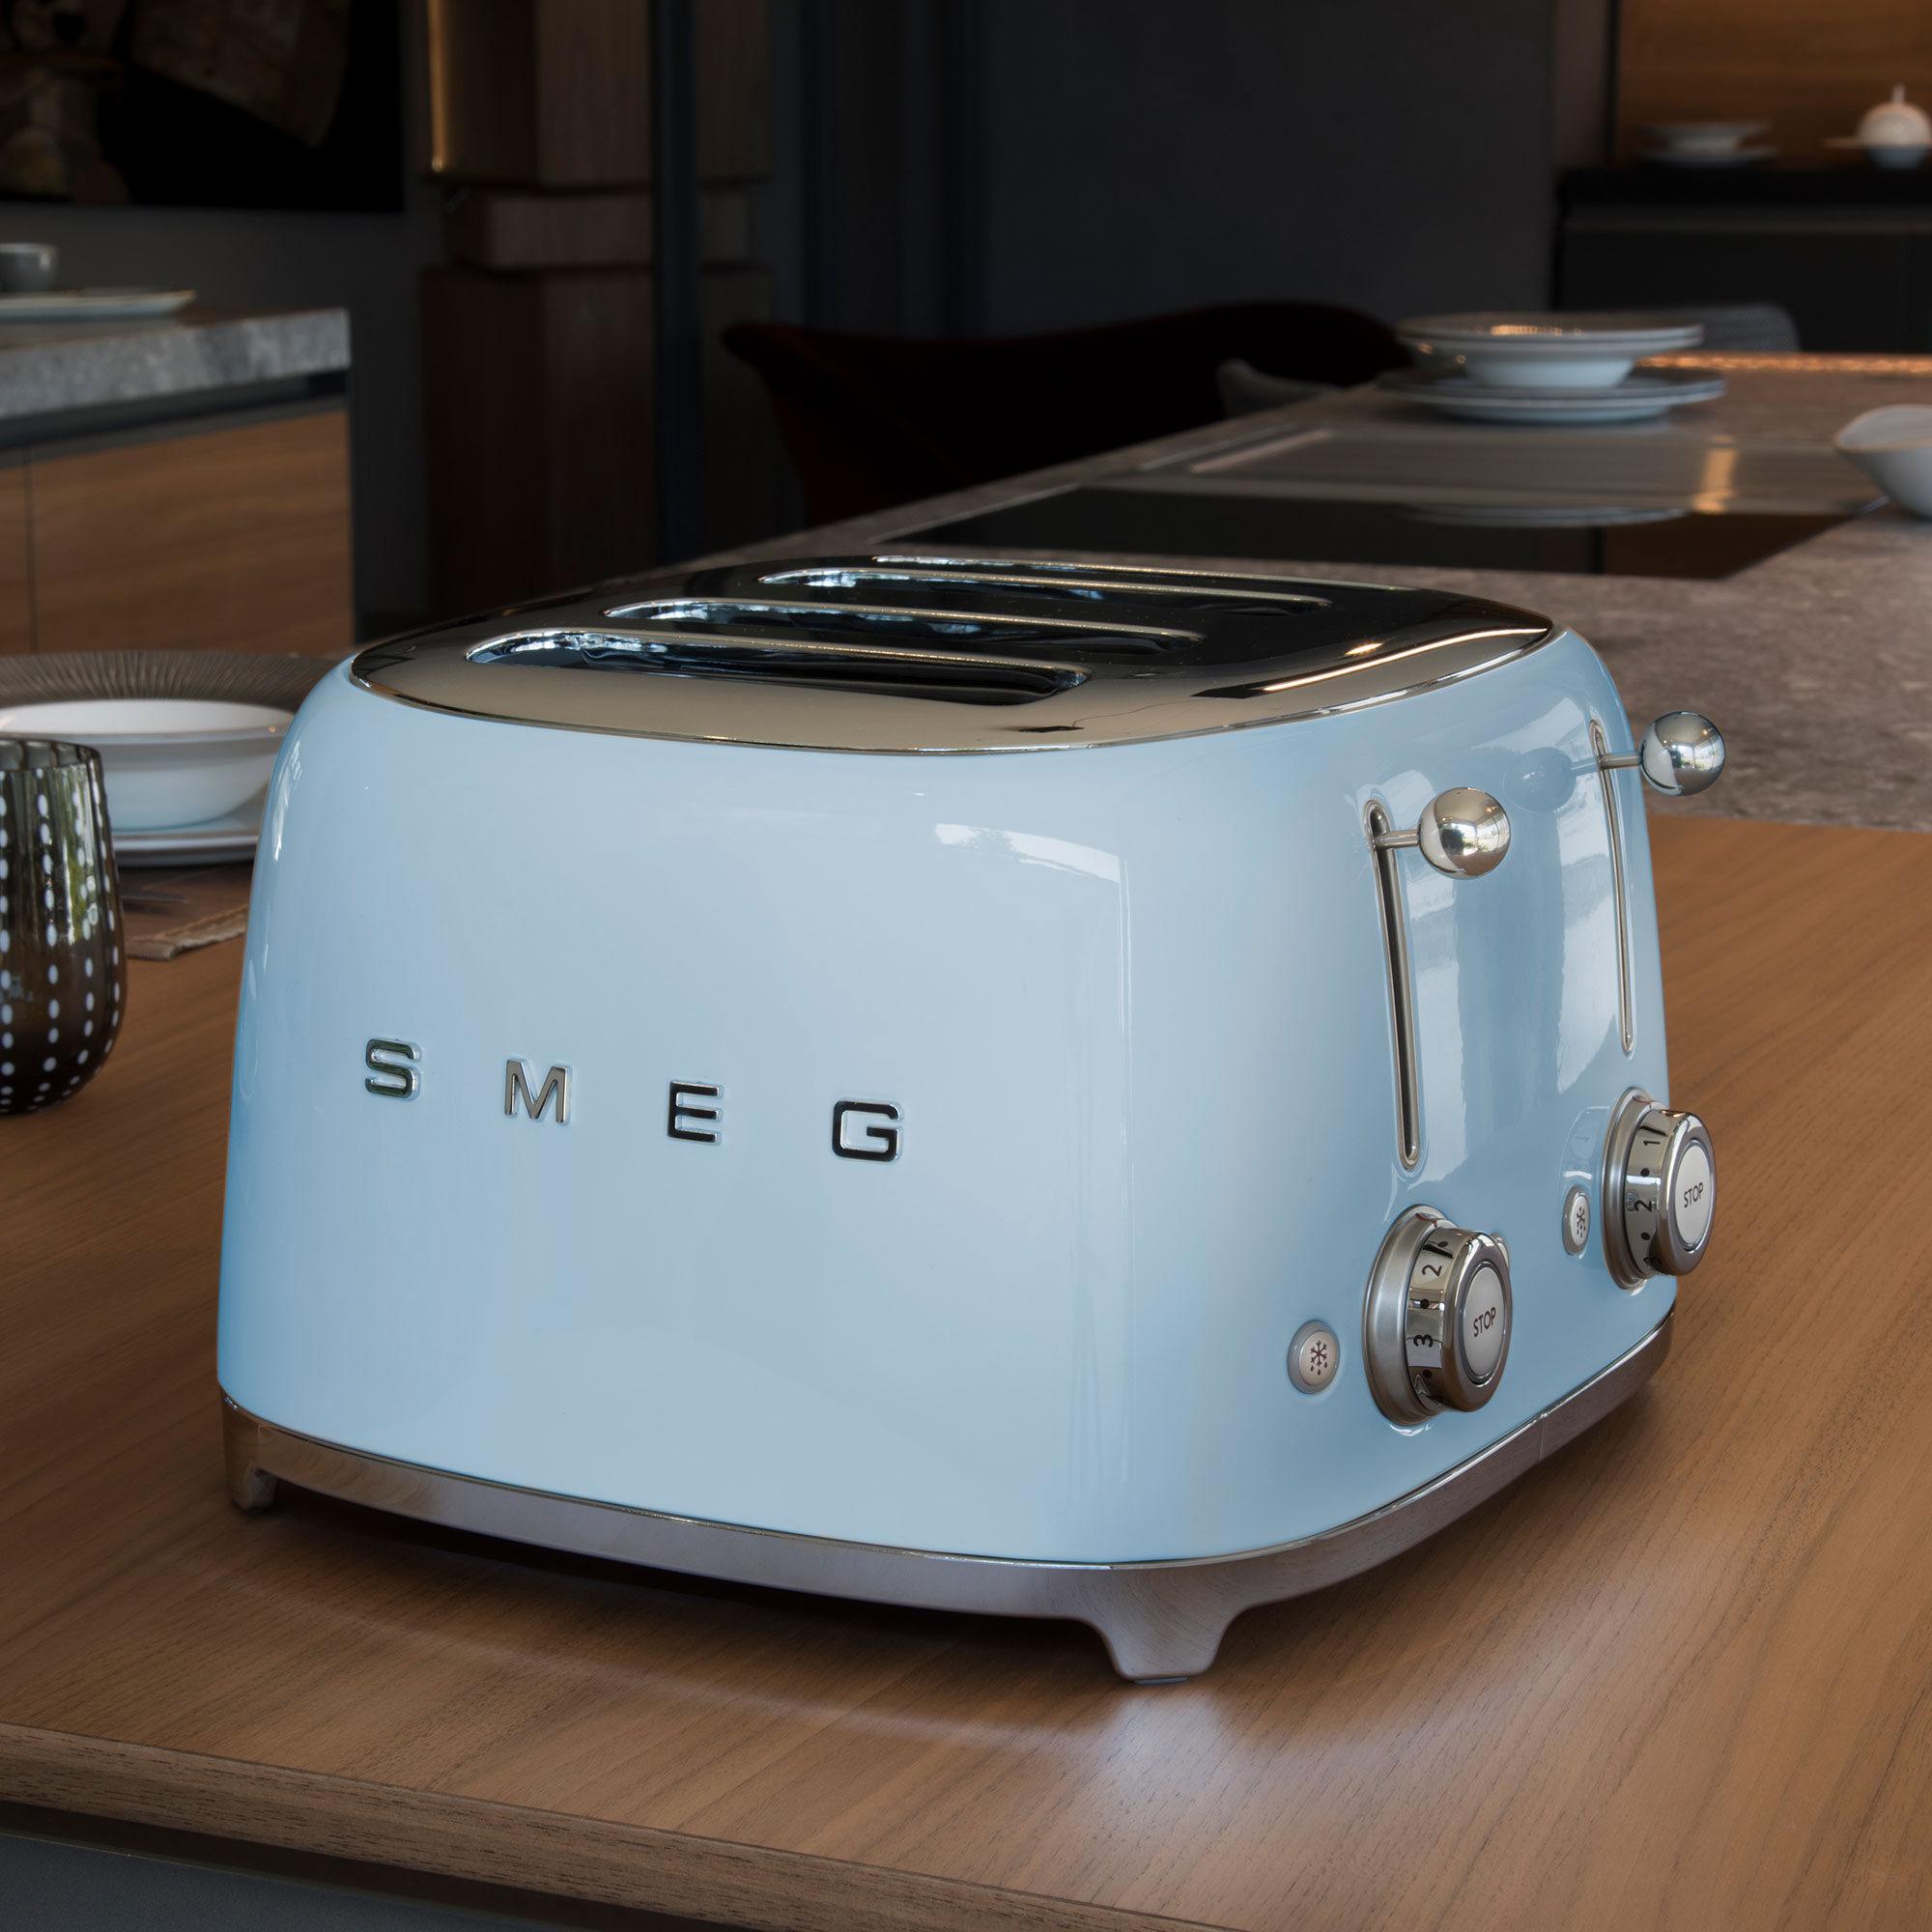 Smeg 50's Retro Style 4 Slot Toaster Pastel Blue Image 2